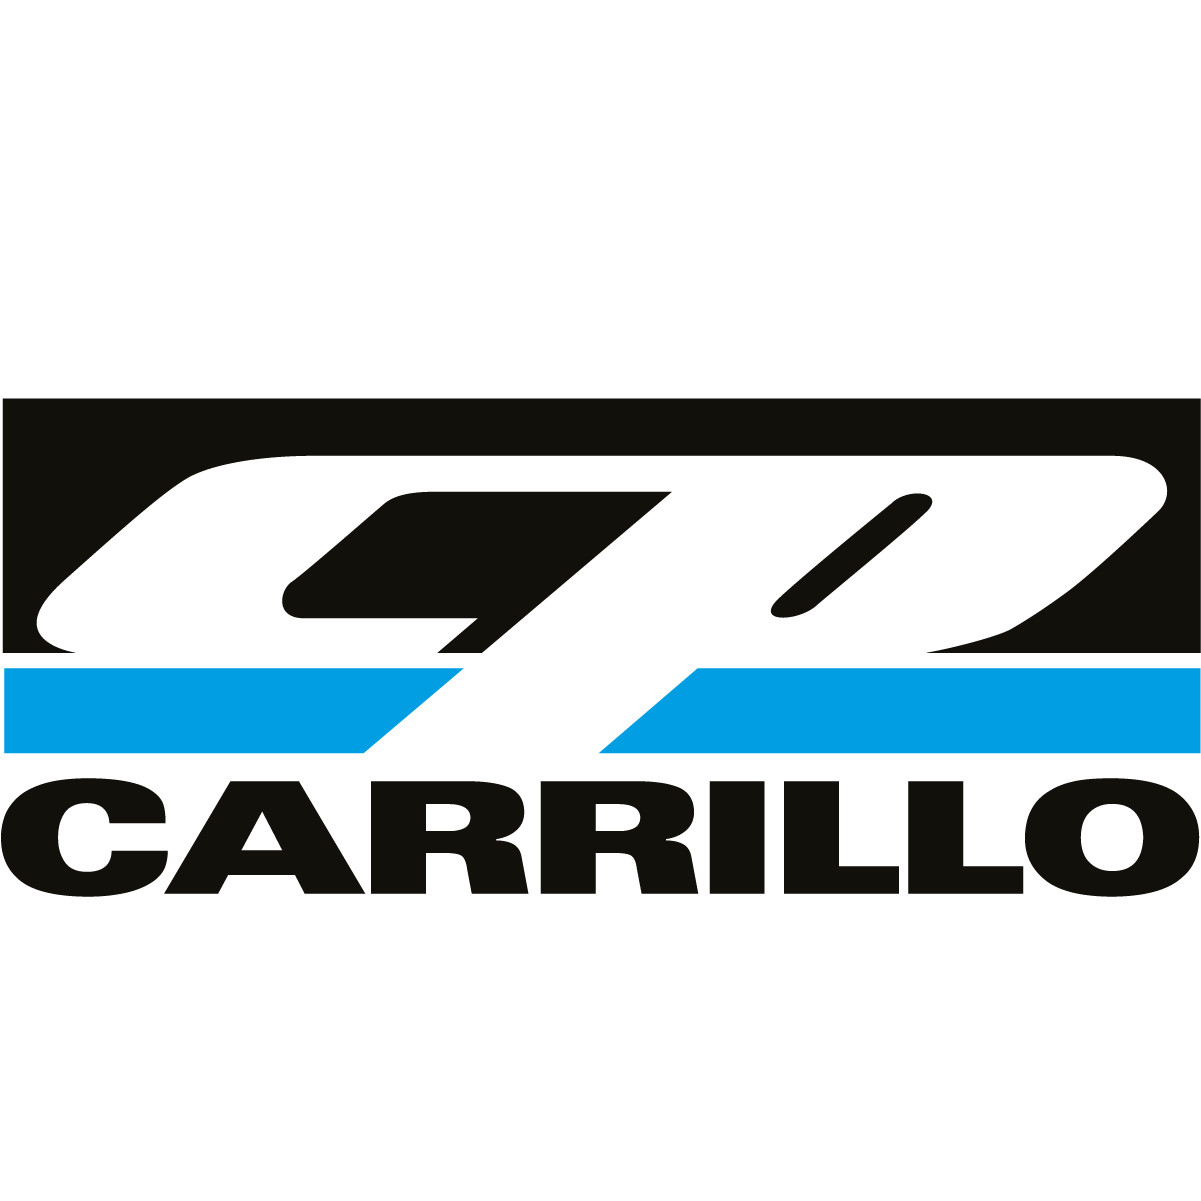 CP CARRILLO